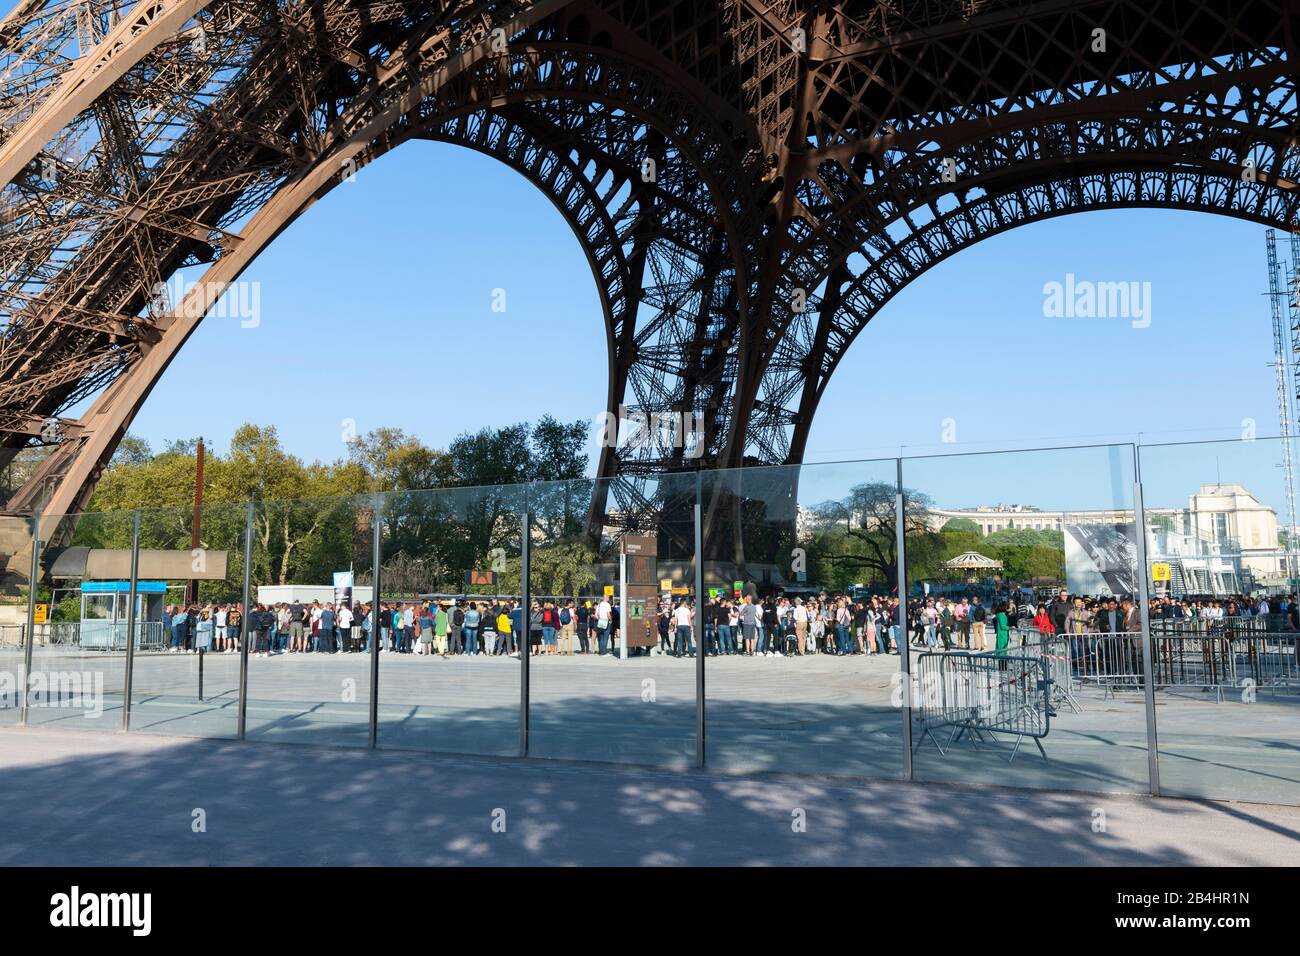 Wartende Touristen stehen unter dem Eiffelturm und warten auf den Einlass zum Lift, Paris, Frankreich, Europa Stock Photo